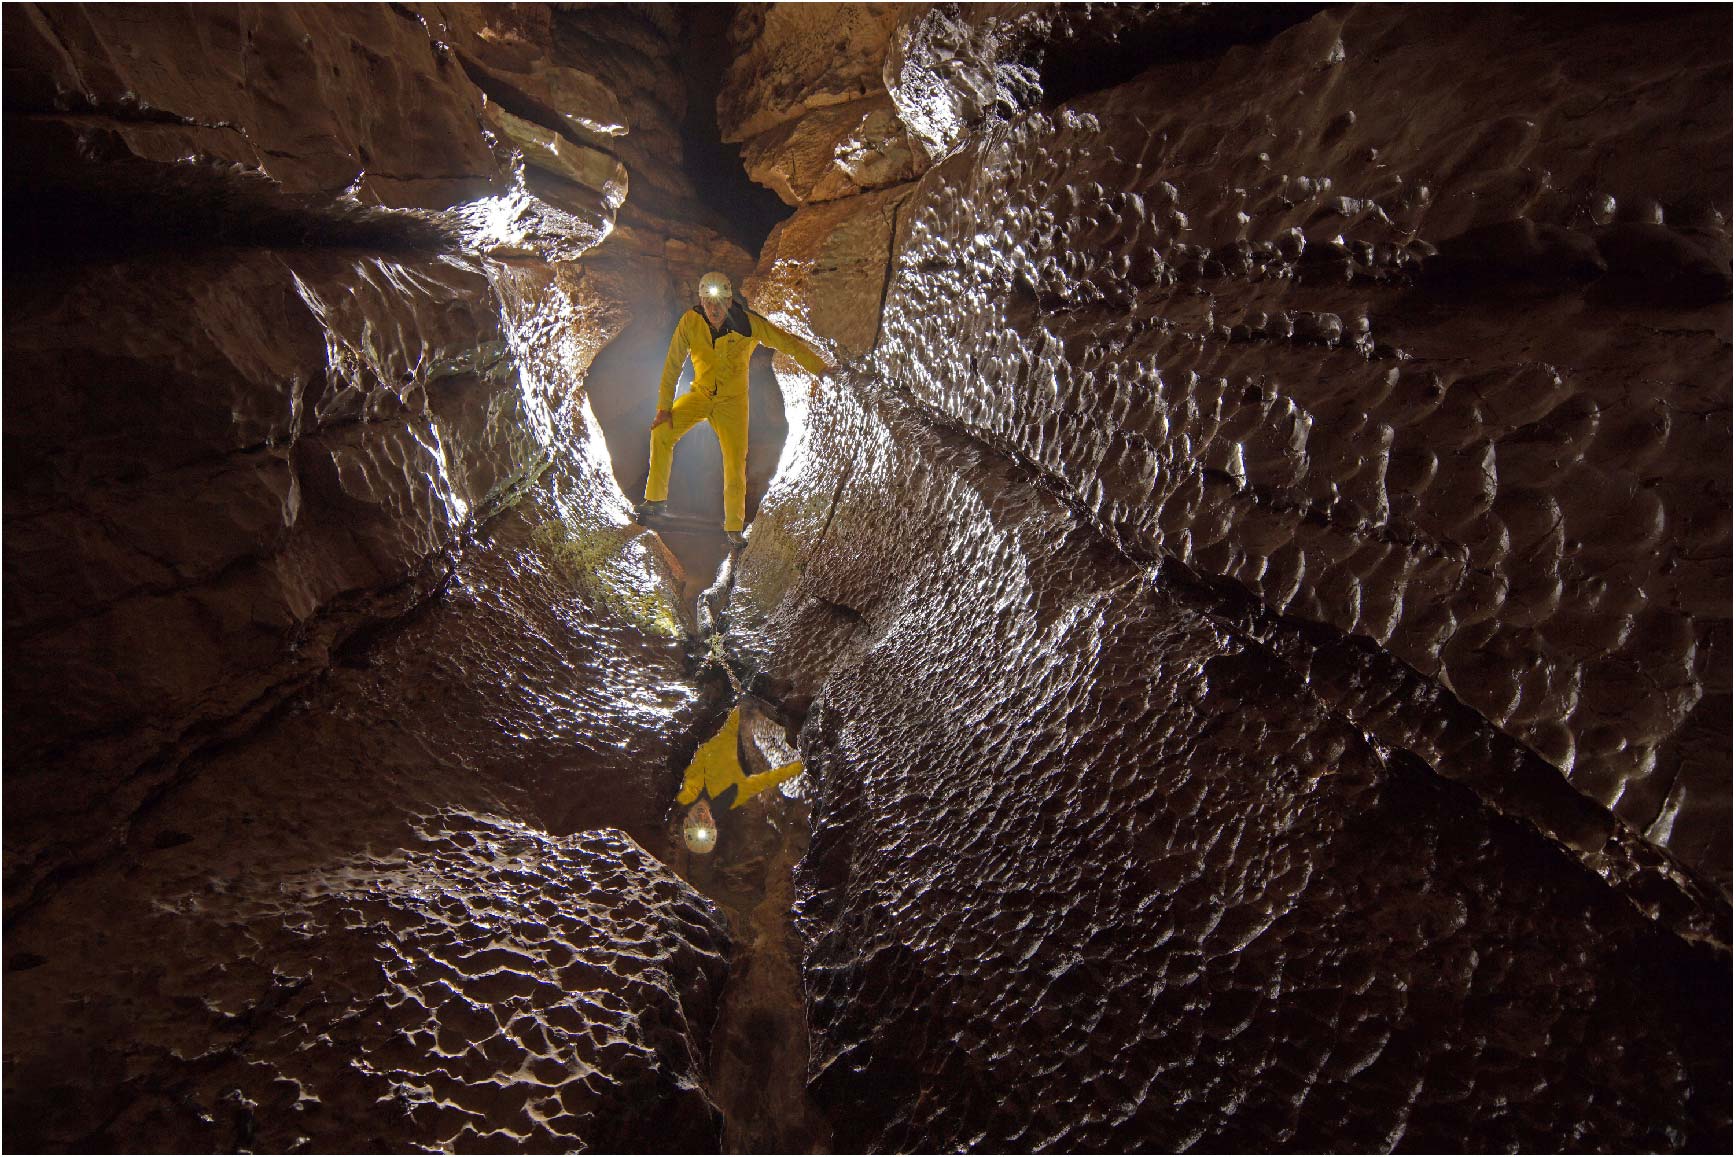 Cupules dissymétriques se présentant avec un côté abrupt vers l'amont de la circulation. 

Photo prise dans la grotte de la Vieille Folle (Verneau) (source : Guy Decreuse)
Site du photographe : https://www.flickr.com/photos/73270743@N02/